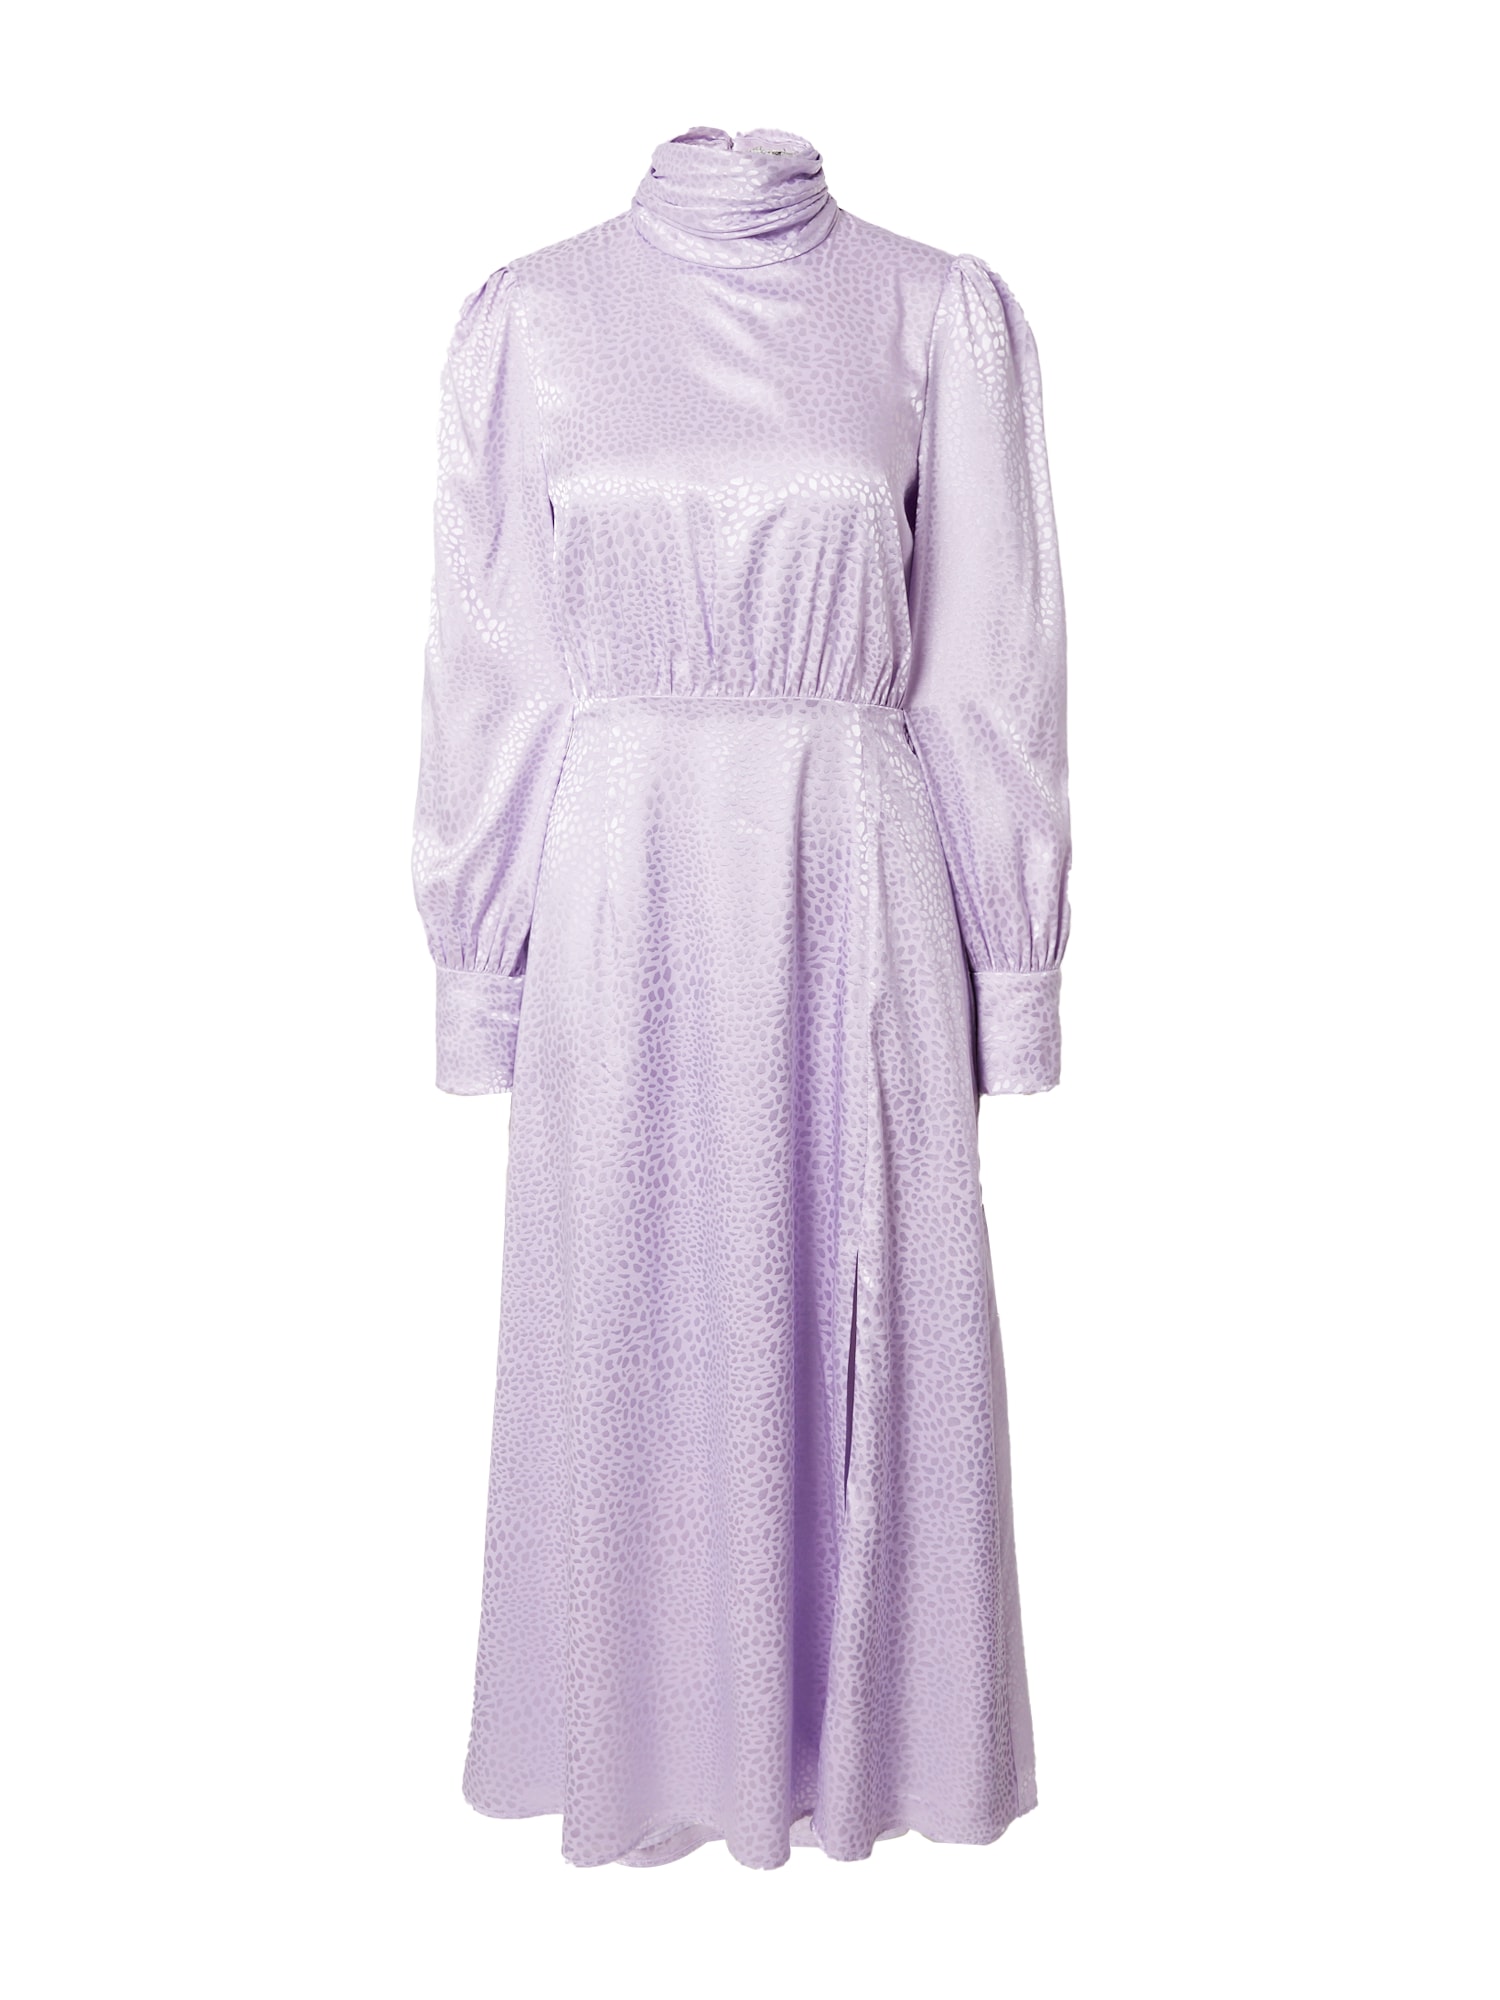 Olivia Rubin Suknelė 'GWEN' rausvai violetinė spalva / pastelinė violetinė